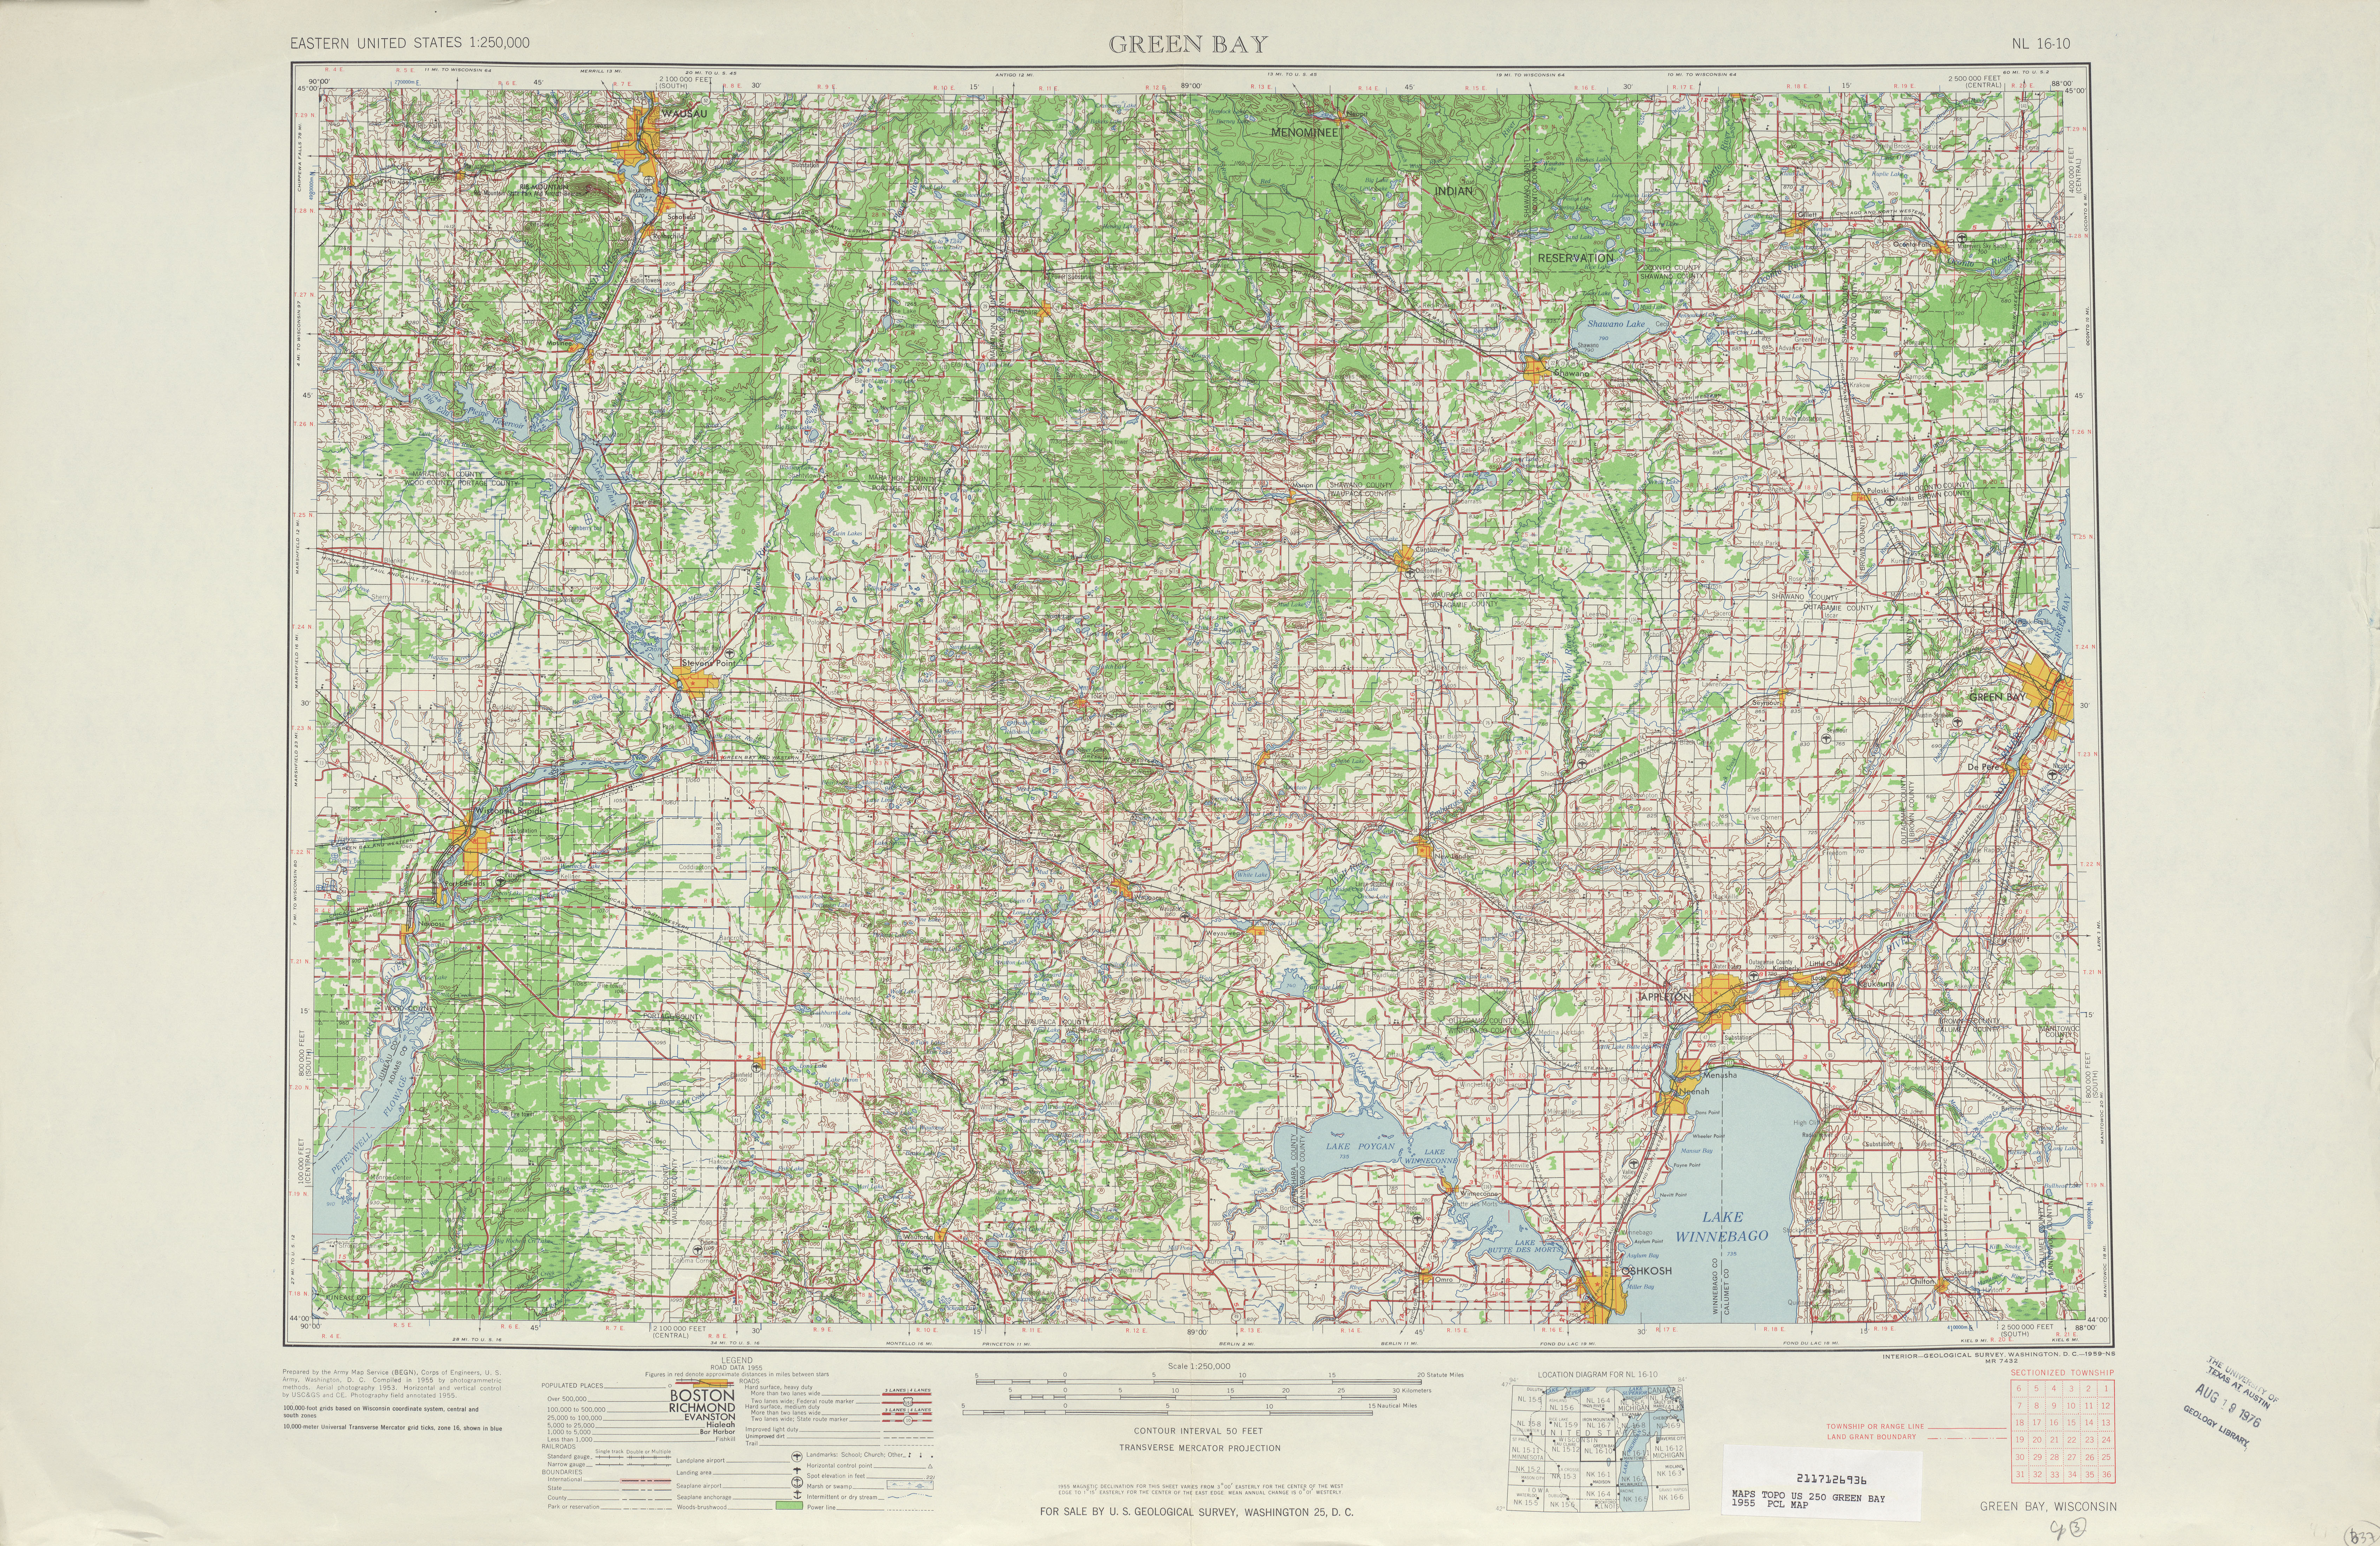 Hoja Green Bay del Mapa Topográfico de los Estados Unidos 1955